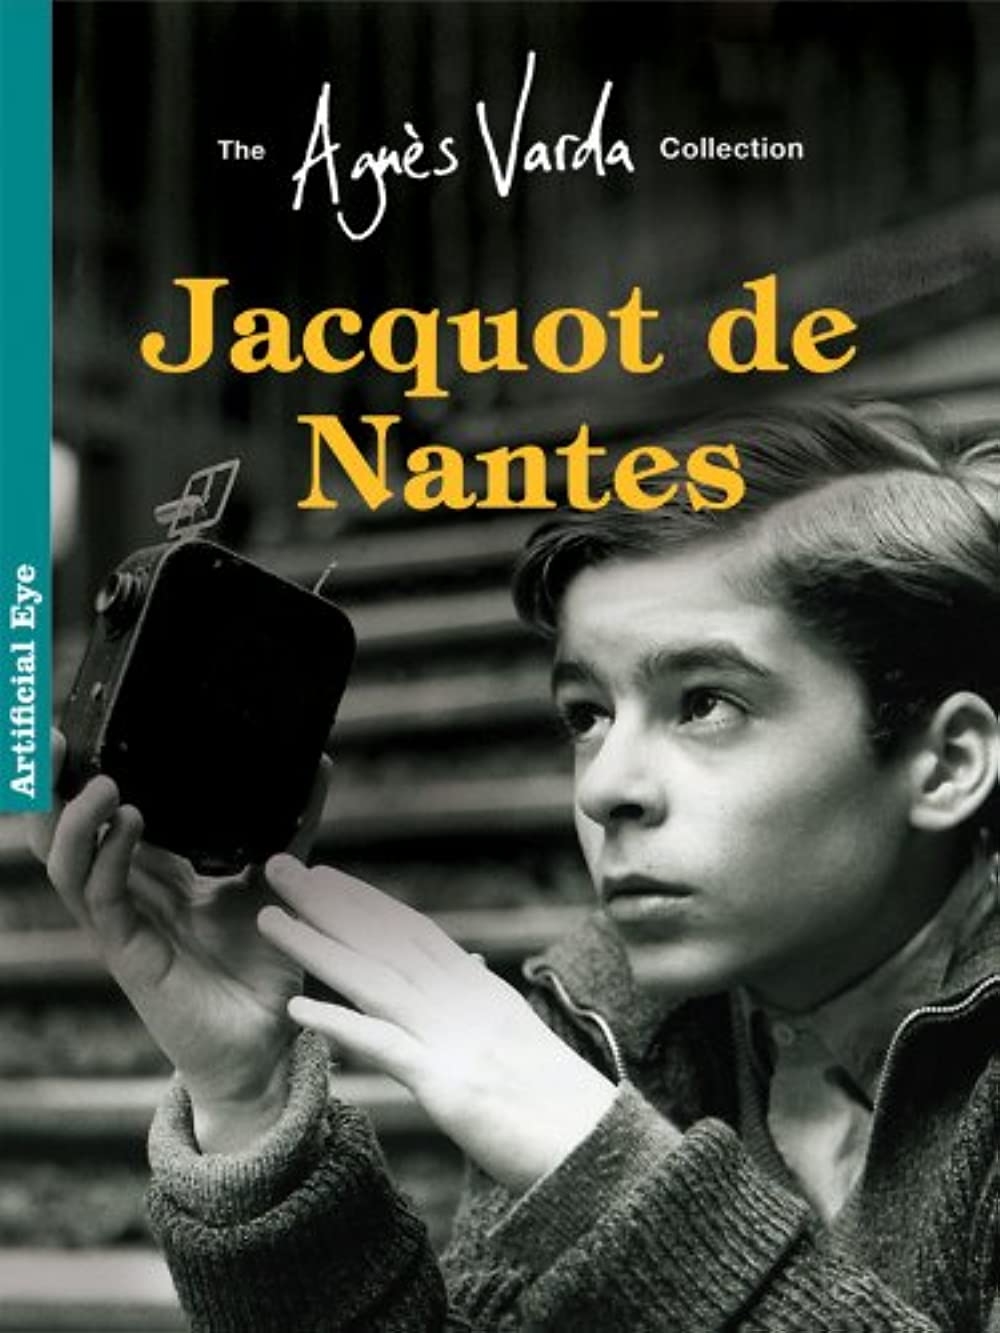 Filmbeschreibung zu Jacquot de Nantes (OV)